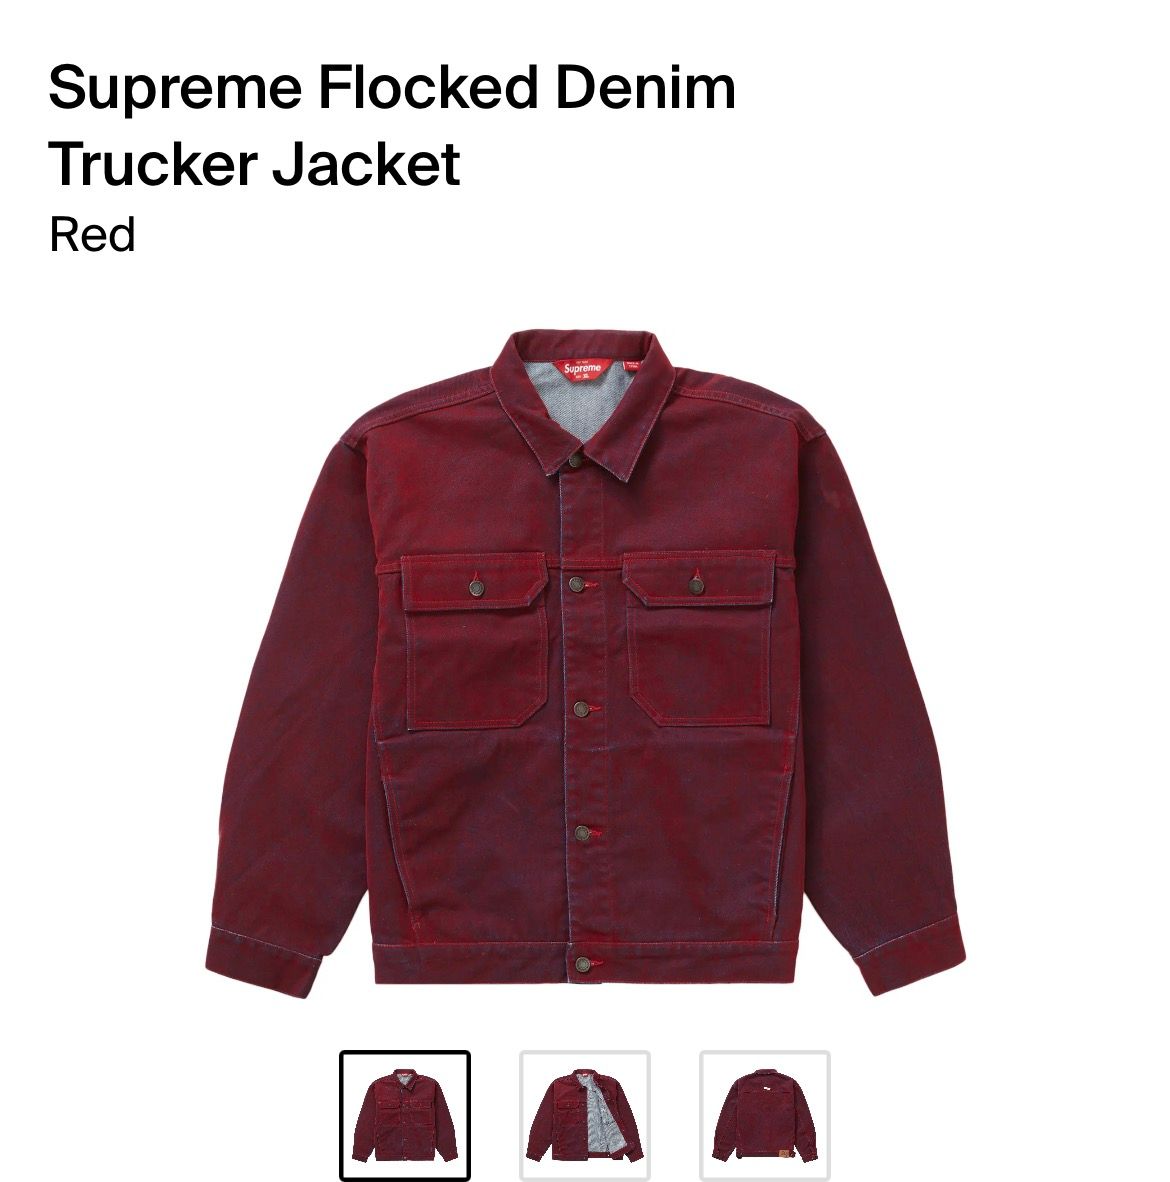 Supreme Flocked Denim Trucker Jacket Red - Novelship